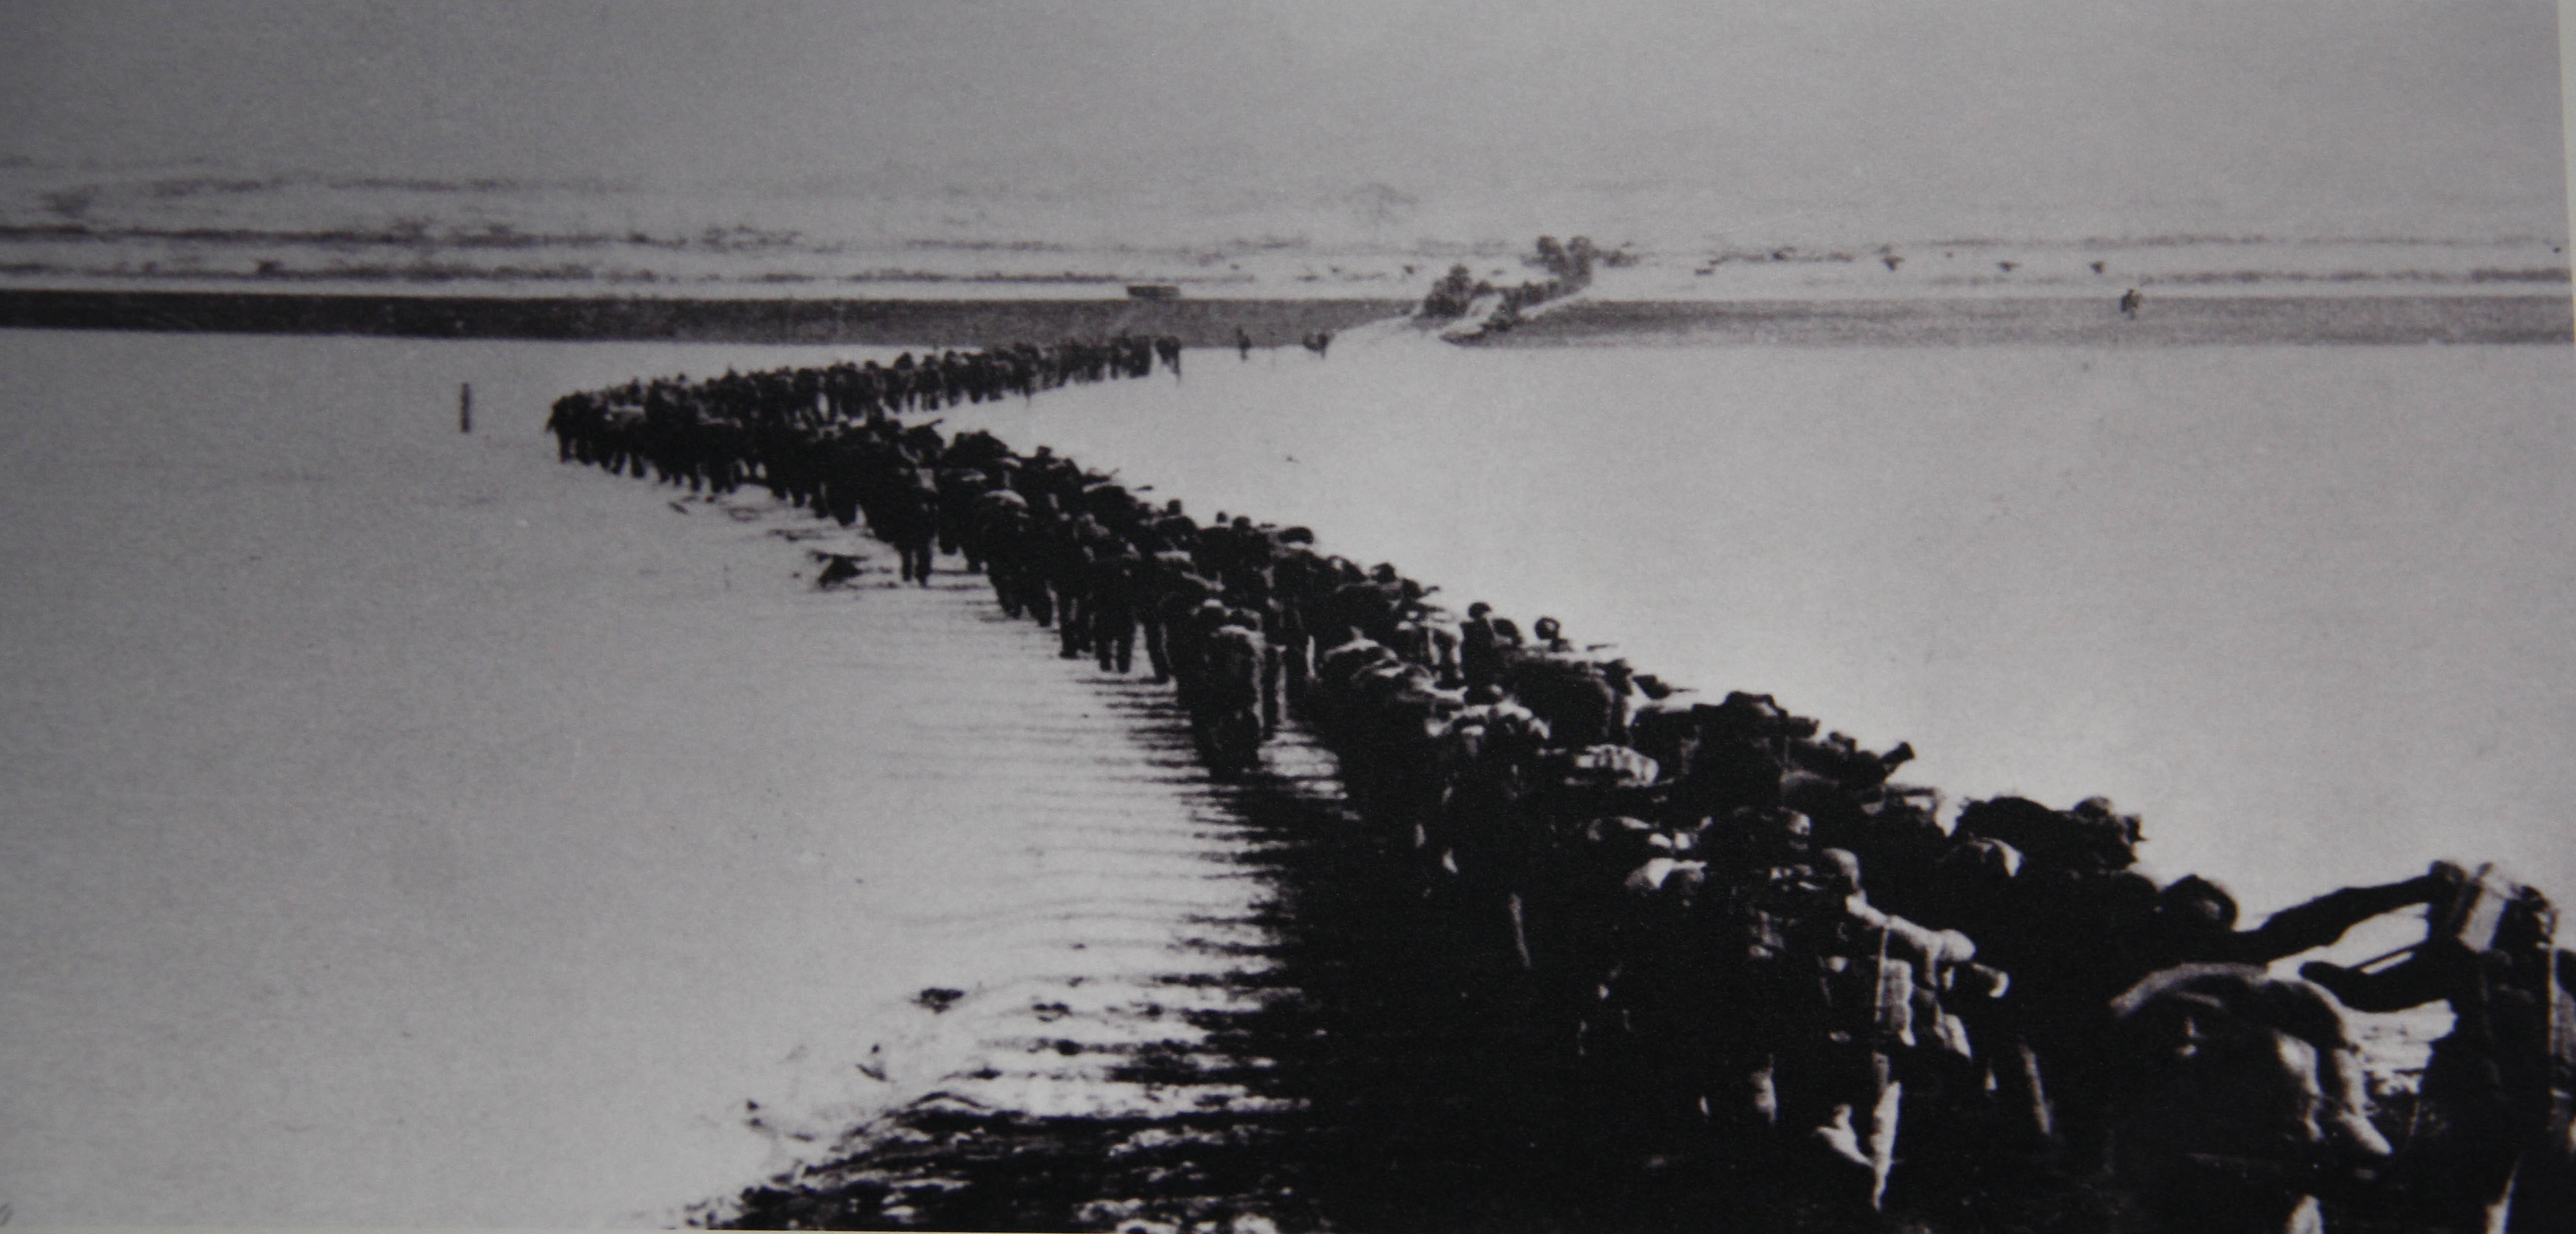 中国人民志愿军跨过鸭绿江,开赴朝鲜前线